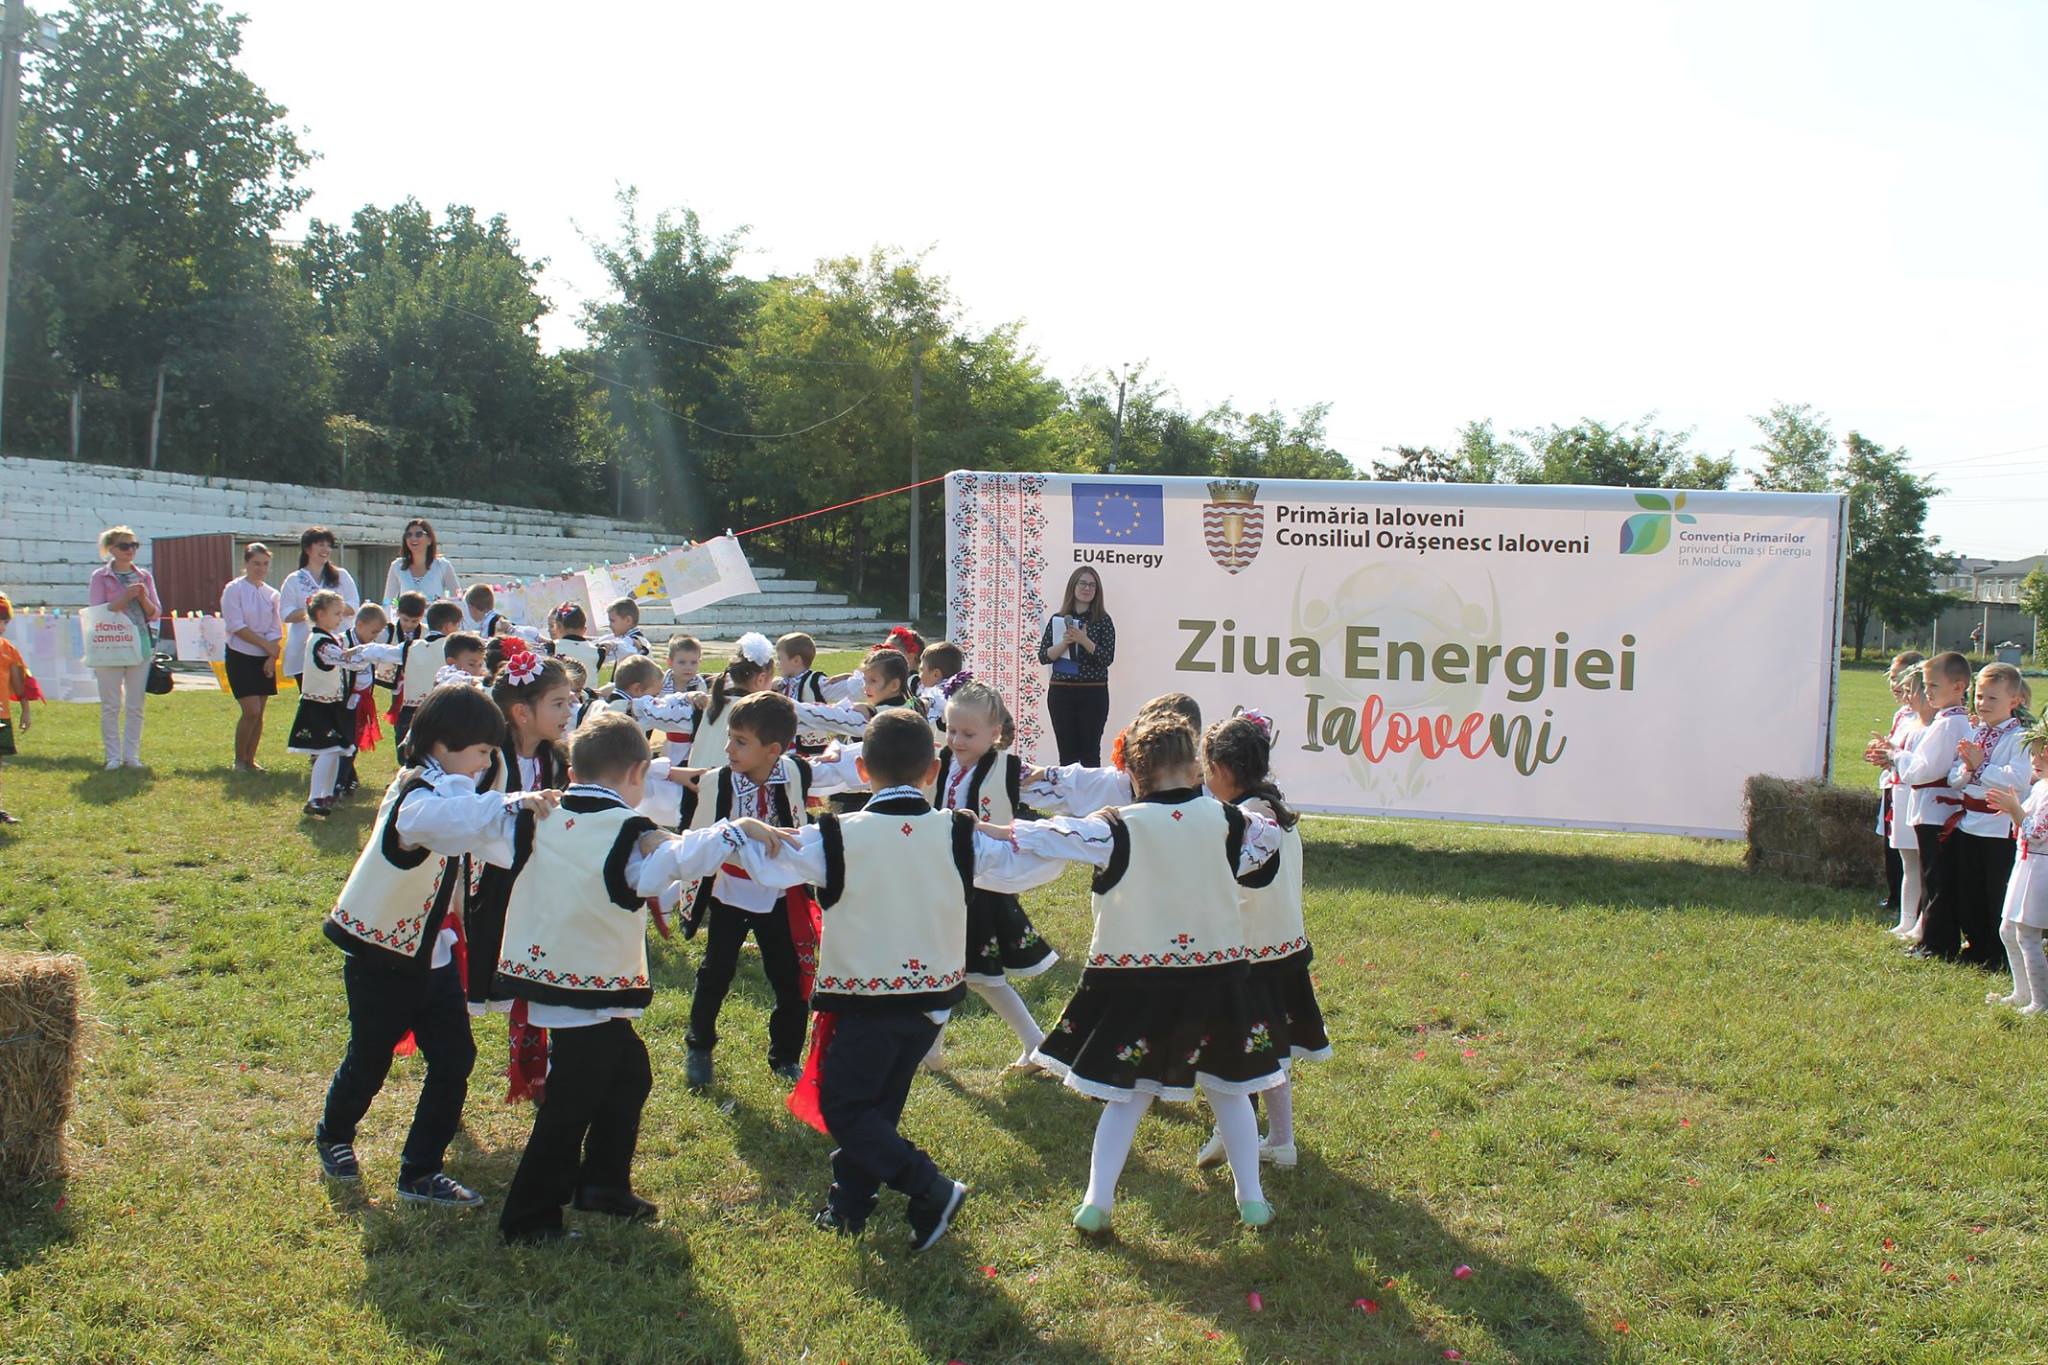 Ziua Energiei - un eveniment de promovare a energiei verzi în orașele semnatare ale Convenției Primarilor Foto de la Ziua Energiei la Ialoveni, 14 septembrie 2018